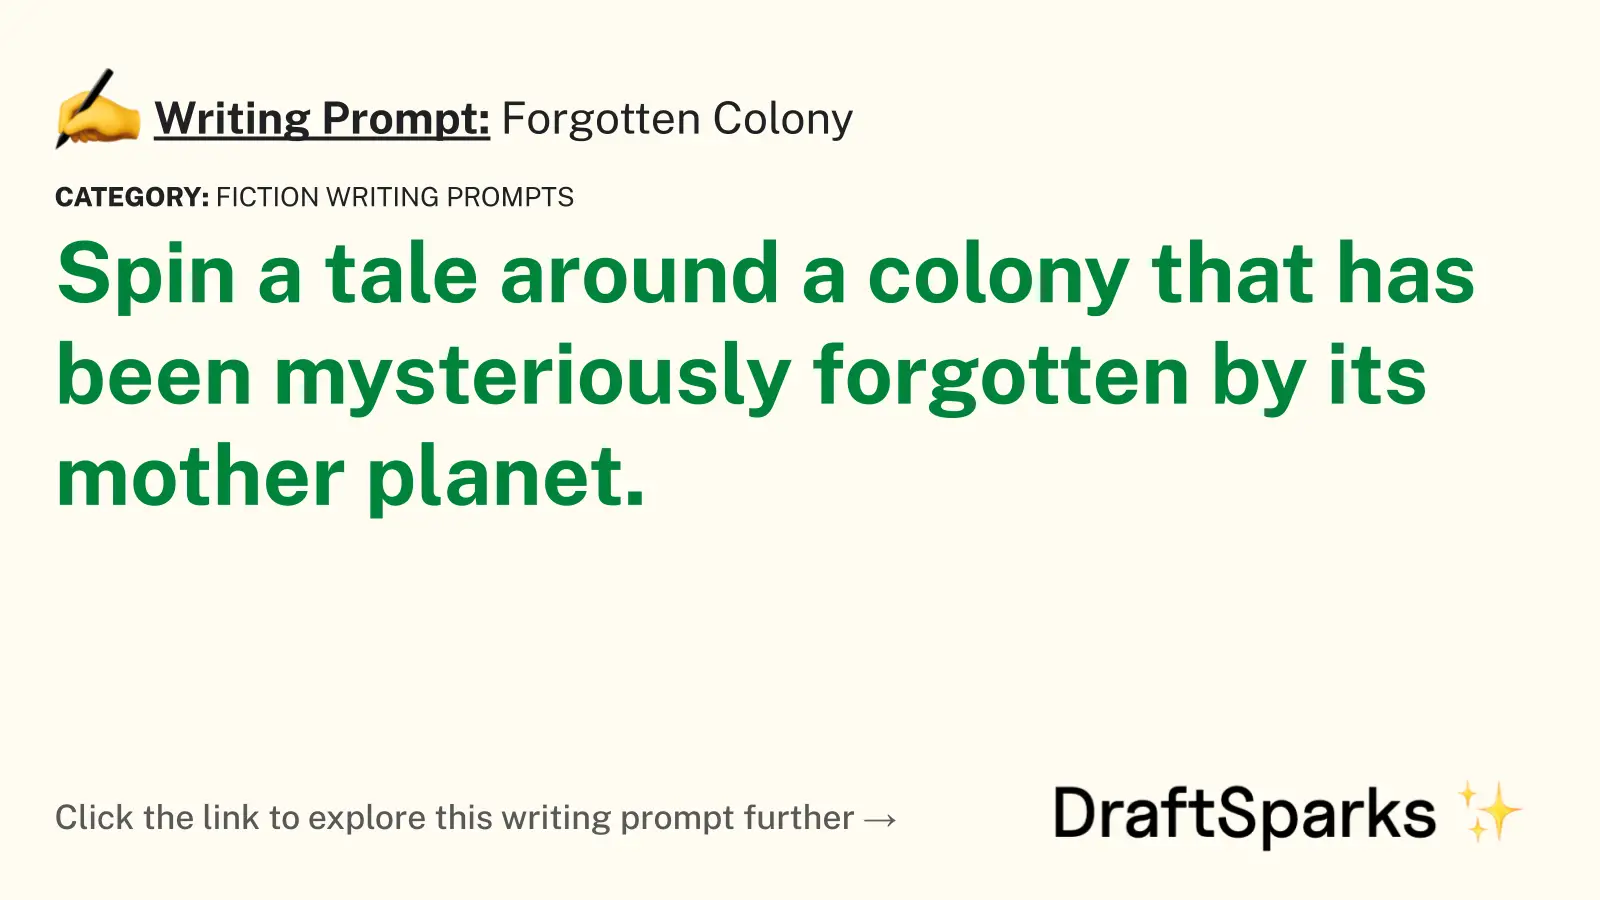 Forgotten Colony